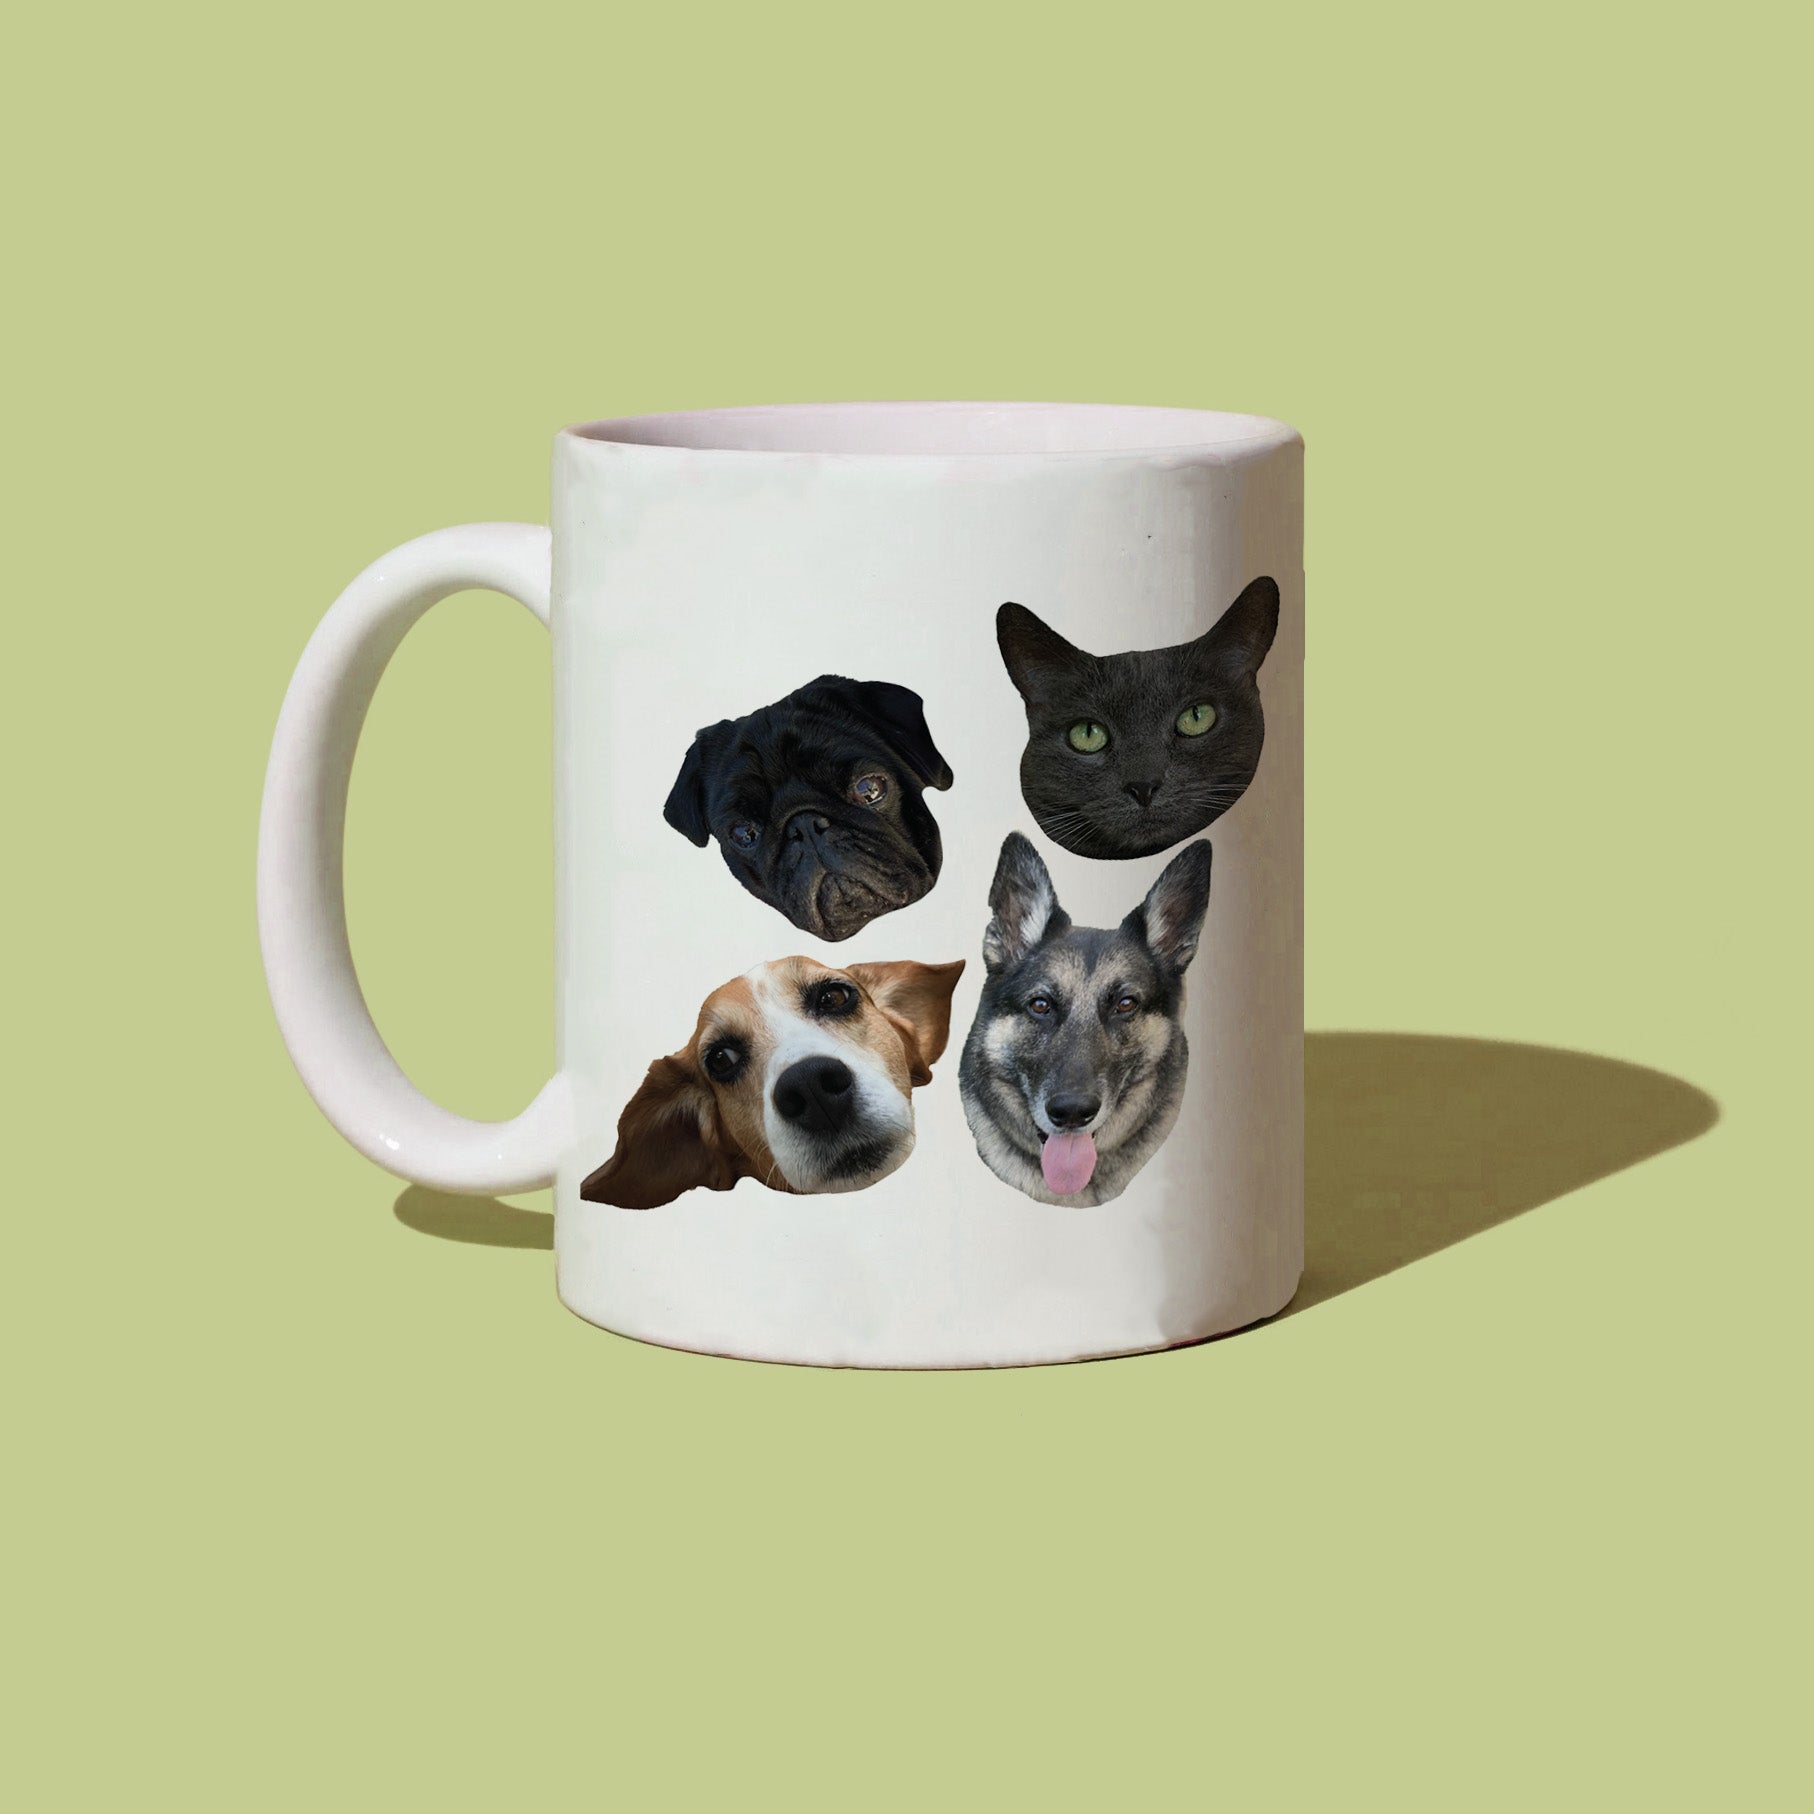 CUSTOM 'Favorite' Pet Mug